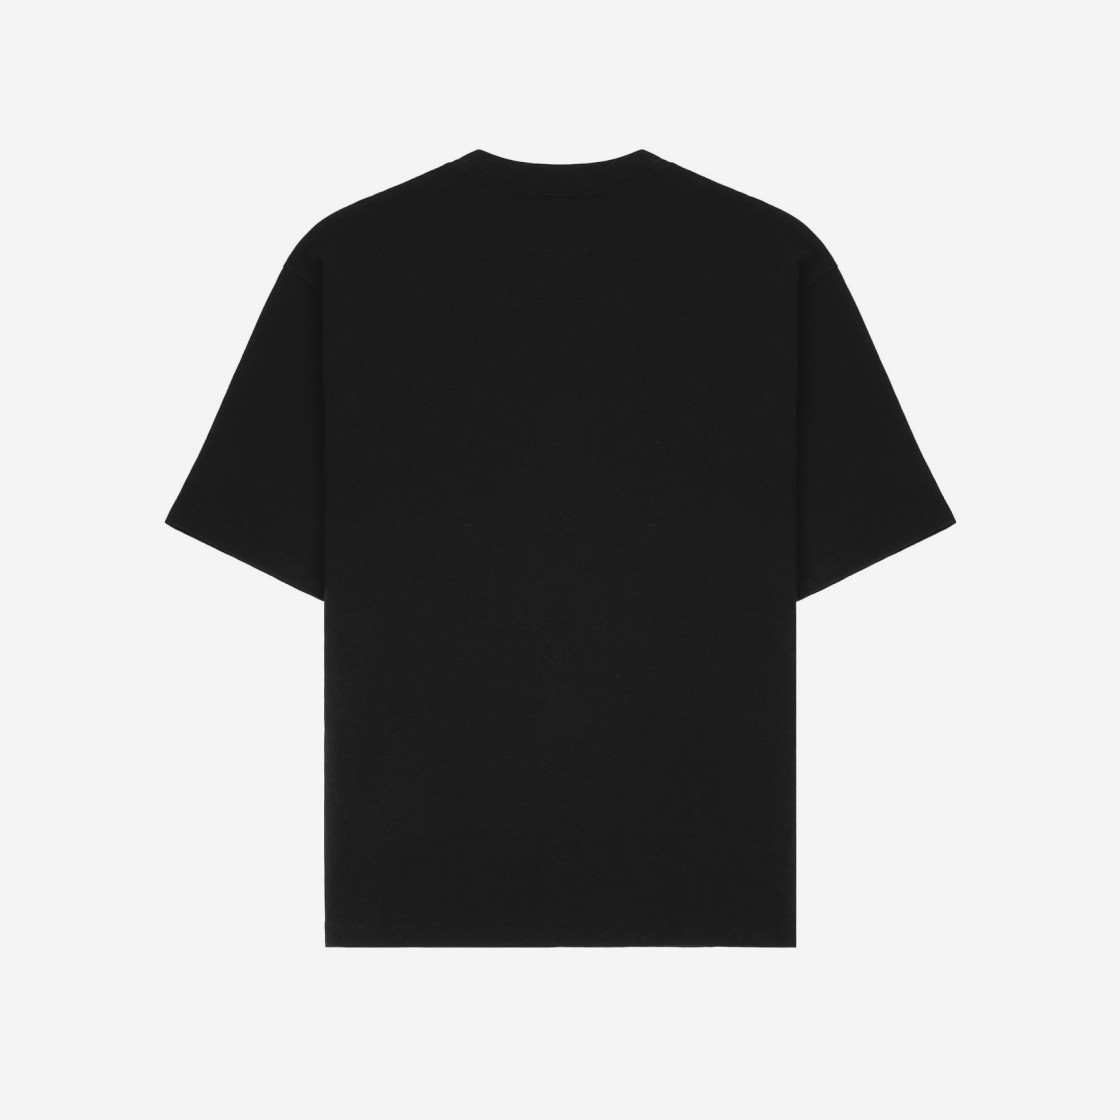 조던 워드마크 티셔츠 블랙 - US/EU DO6098-010